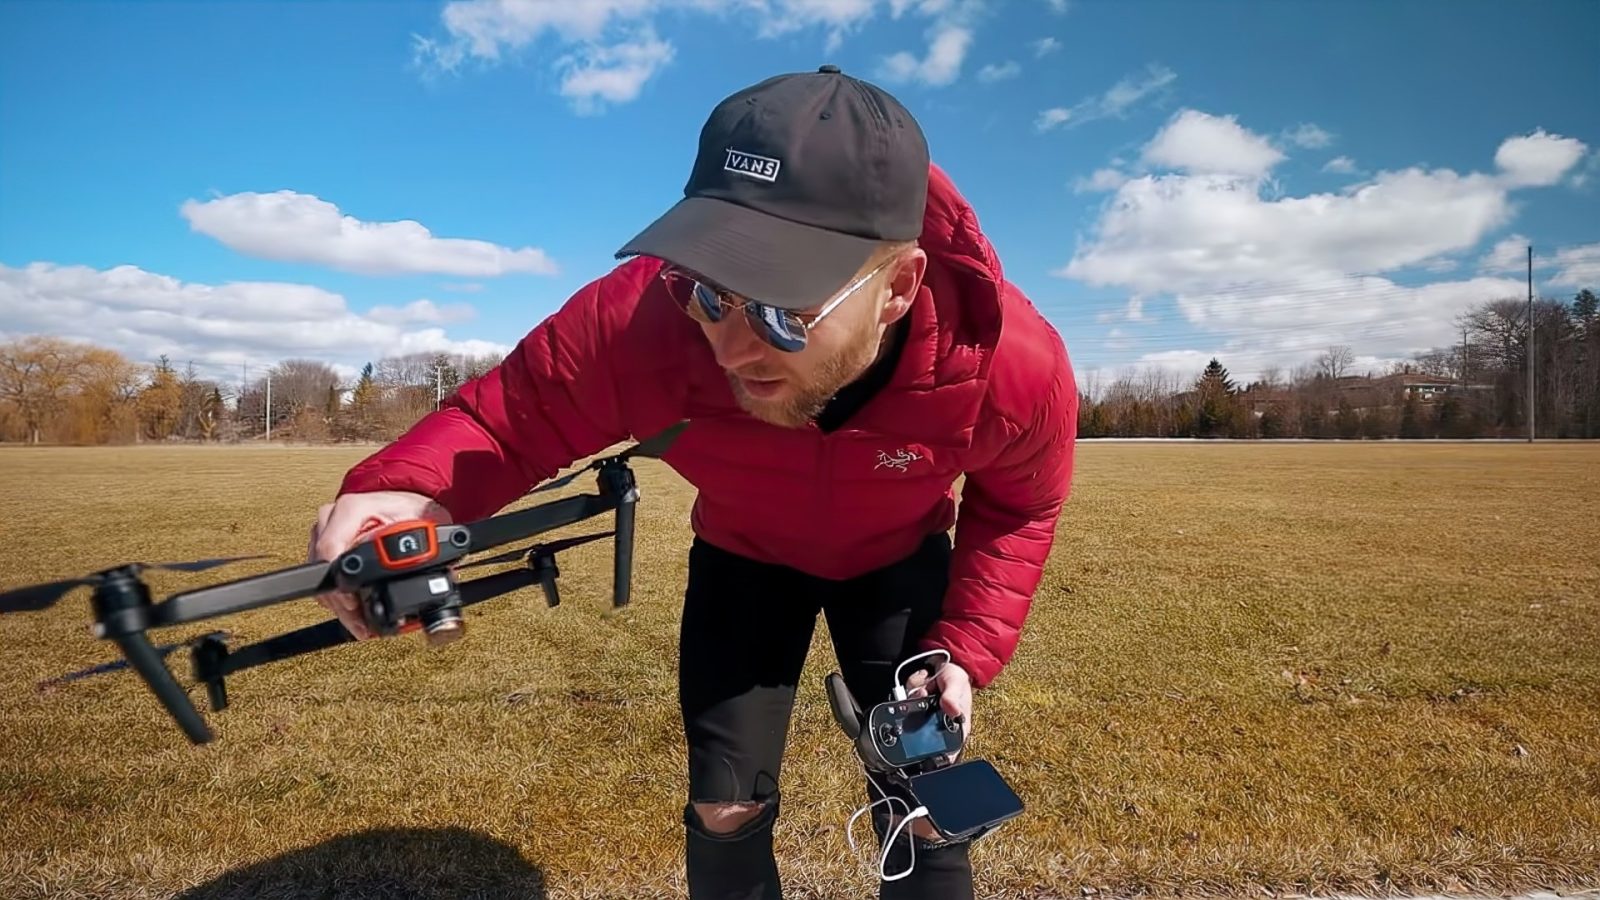 Matti Haapoja reviews the Autel Evo drone [video]